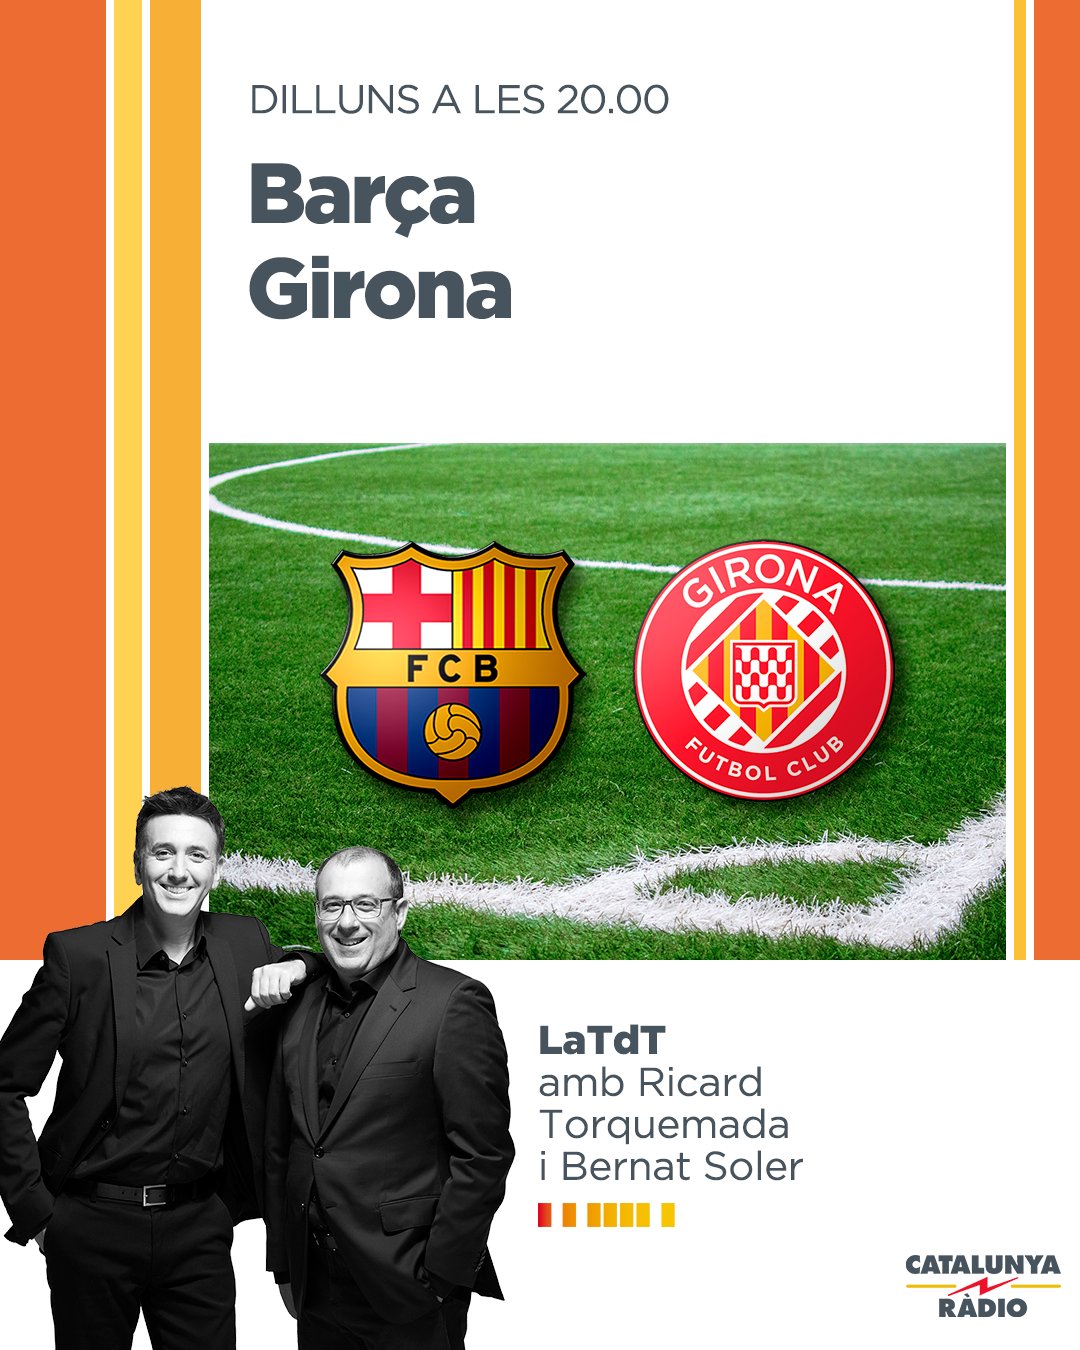 Intenso insalubre Último Catalunya Ràdio on Twitter: "🔴 Barça-Girona, a @LaTdT: quin pes tindrà la  decepció a la Copa? https://t.co/UGElG7Y92e https://t.co/MMWMlzVOZK" /  Twitter